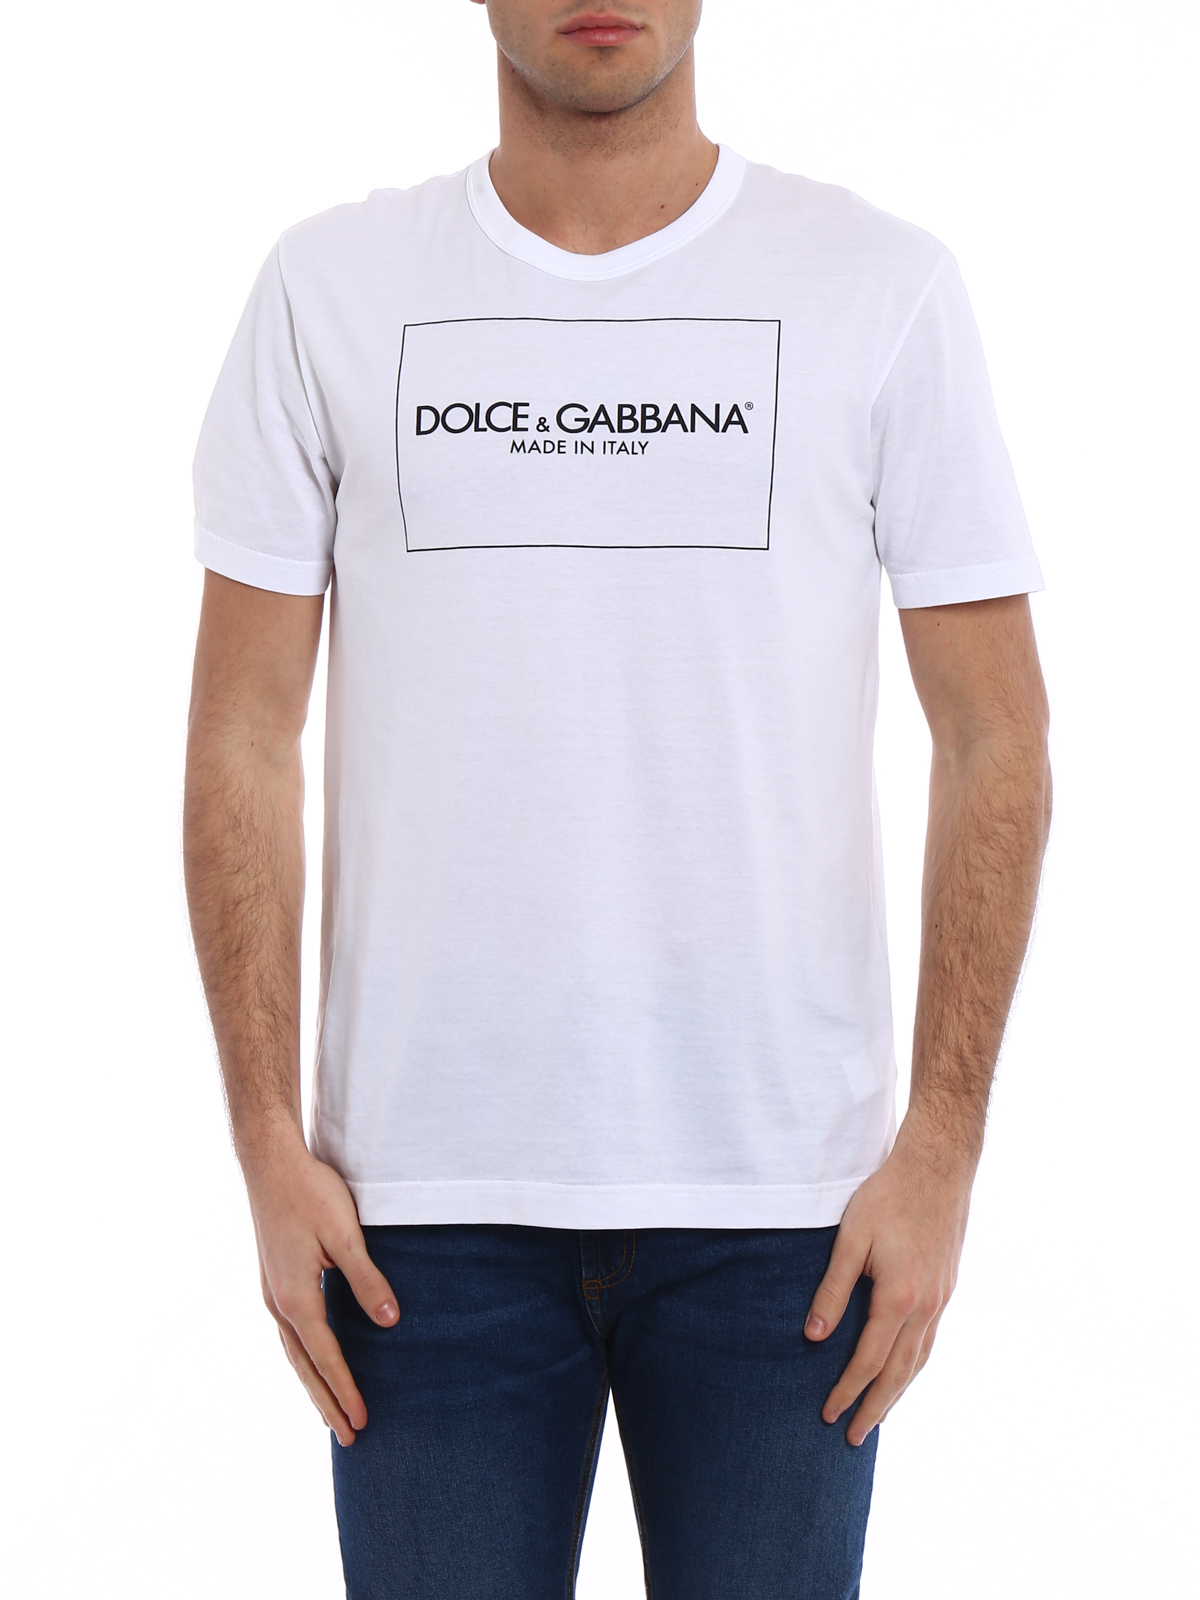 Dolce \u0026 Gabbana - D\u0026G Made in Italy 